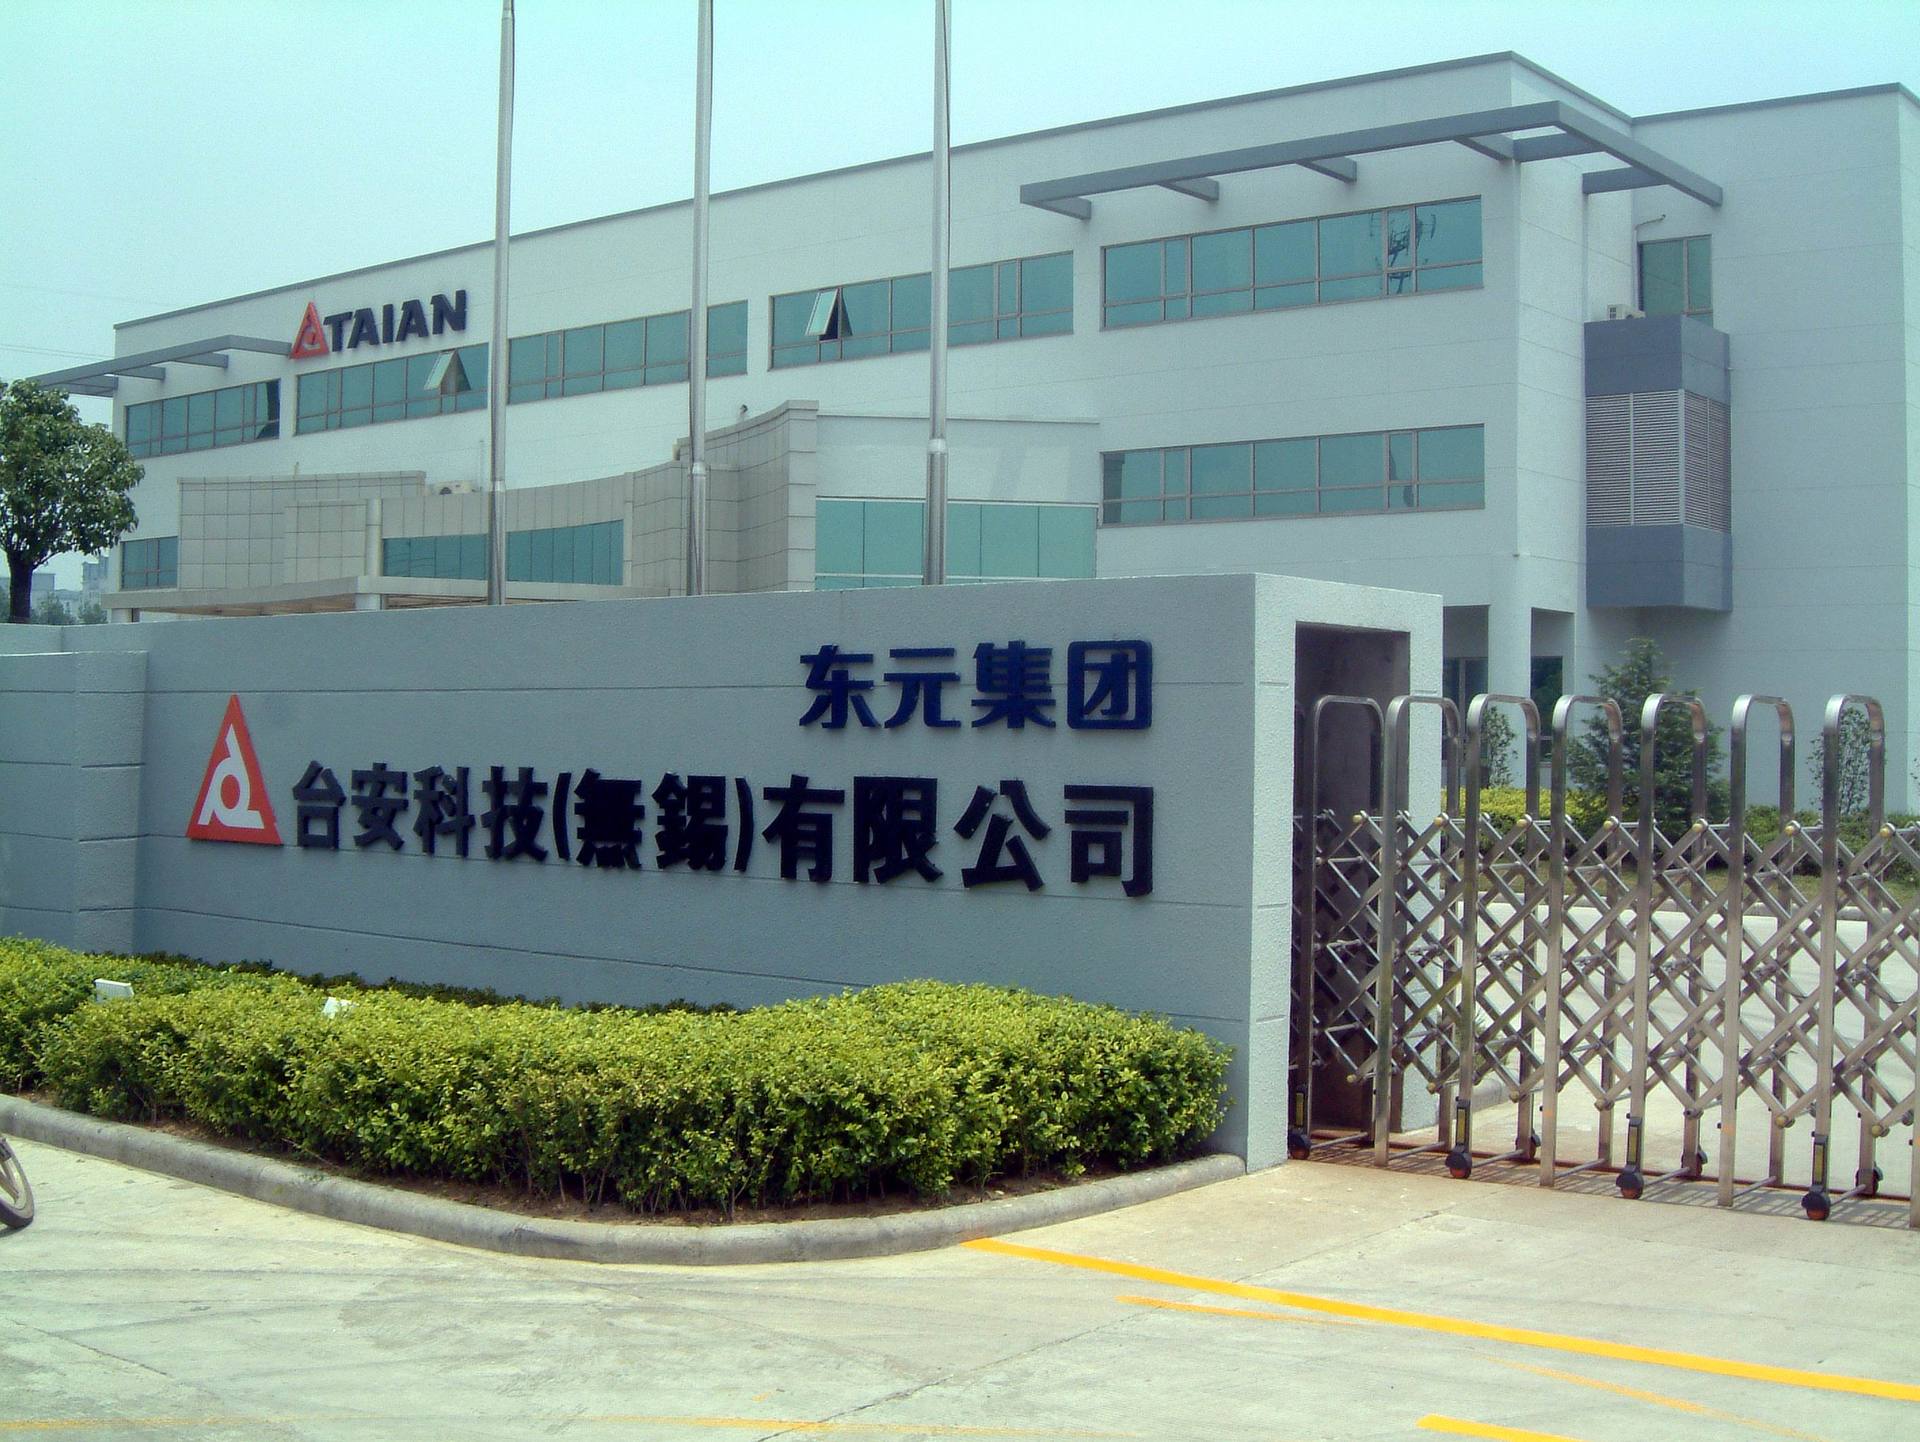 台安科技(无锡)有限公司是由台湾知名跨国企业——东元集团于2000年7